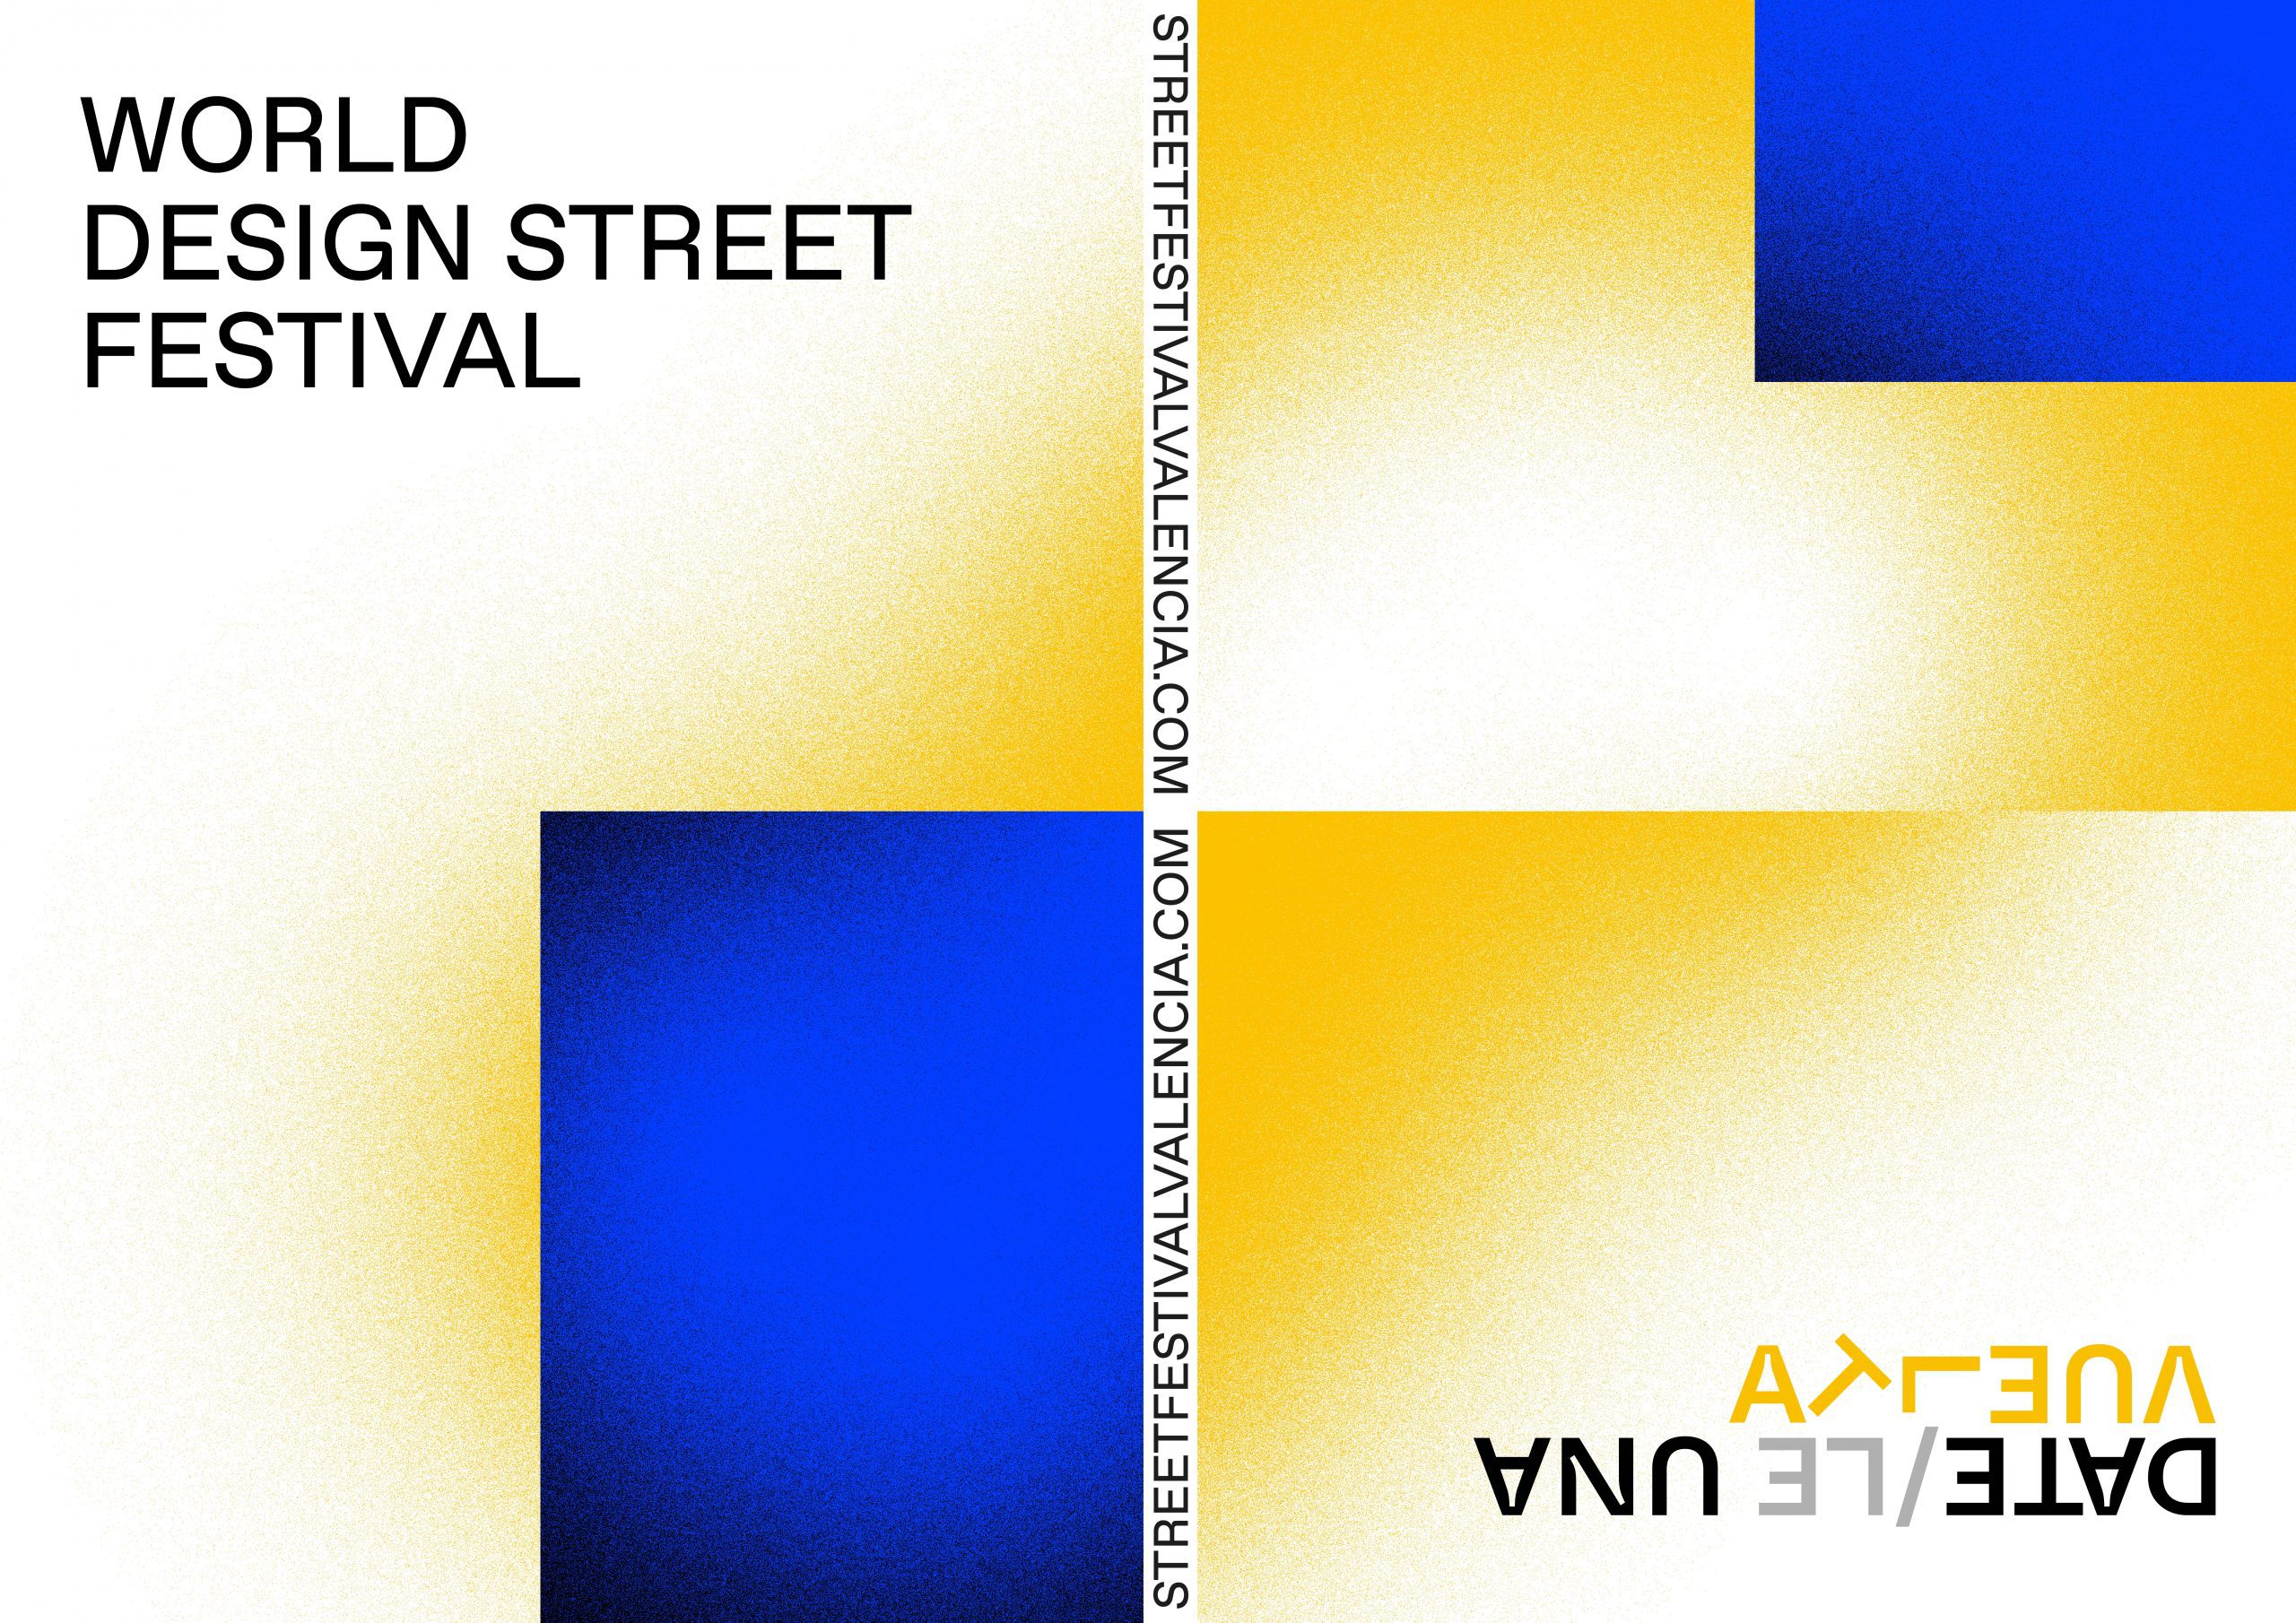 FESTIVAL. “World Design Street Festival”